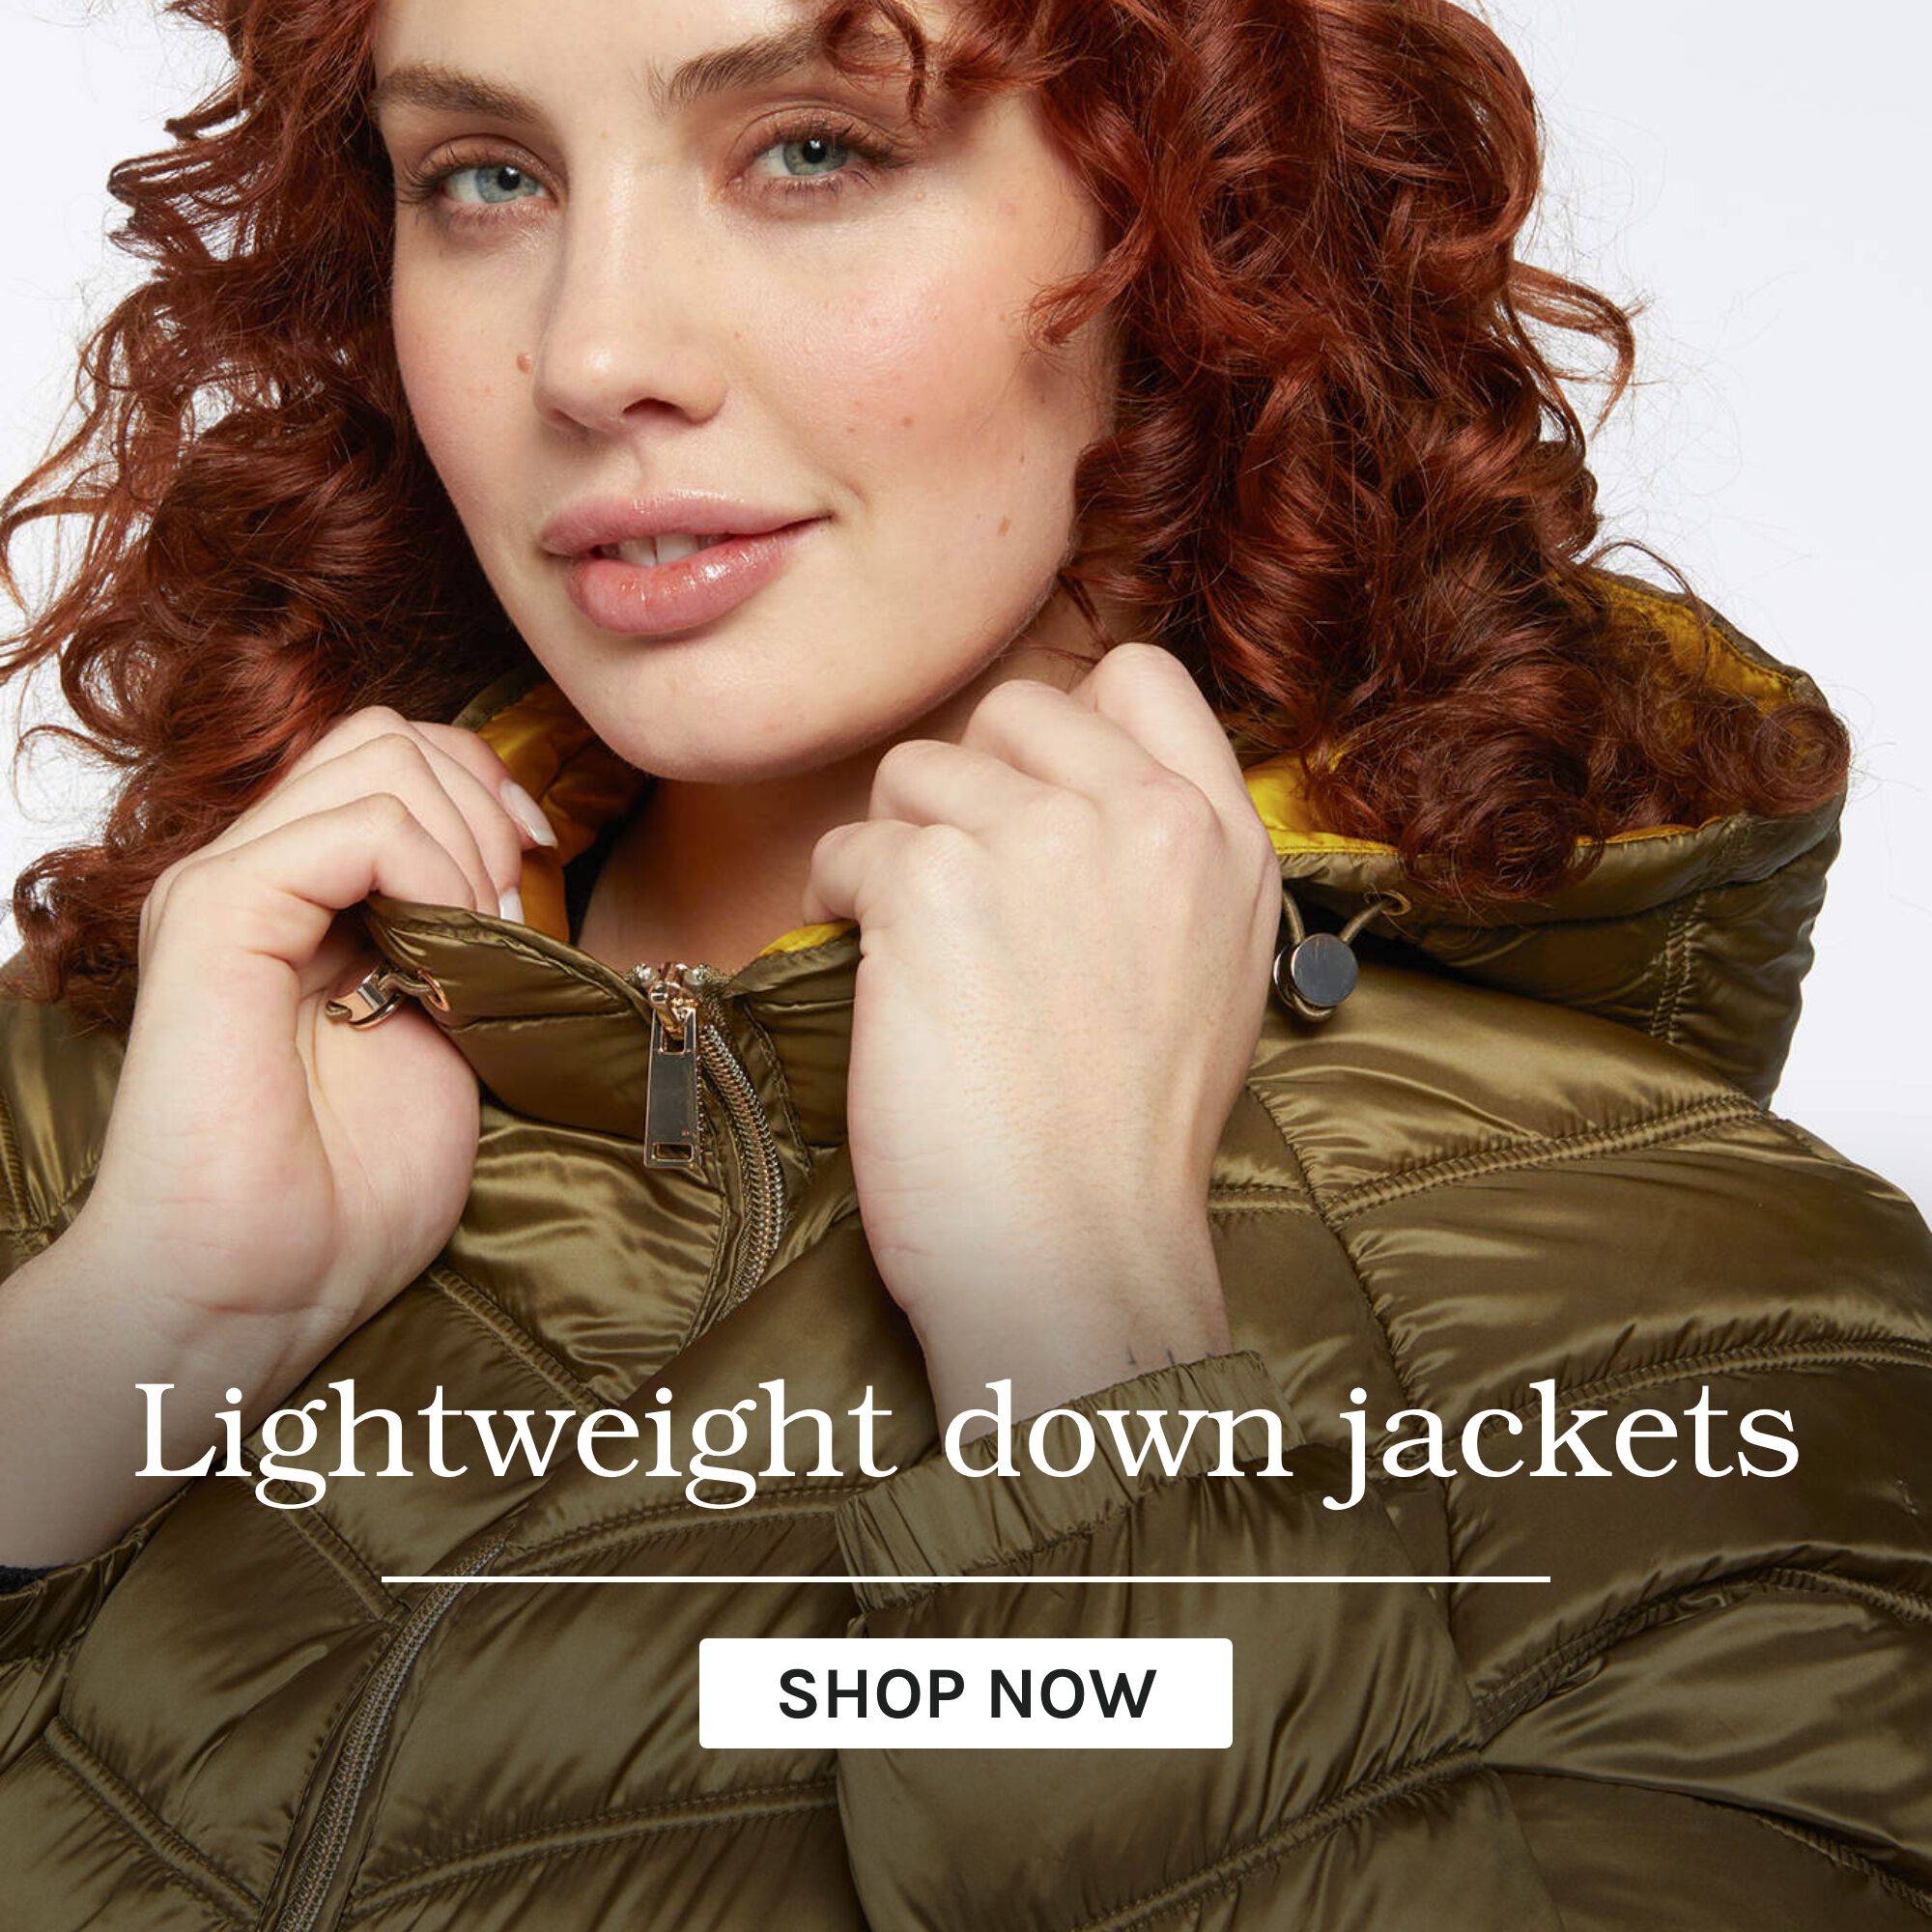 Lightweight down jackets